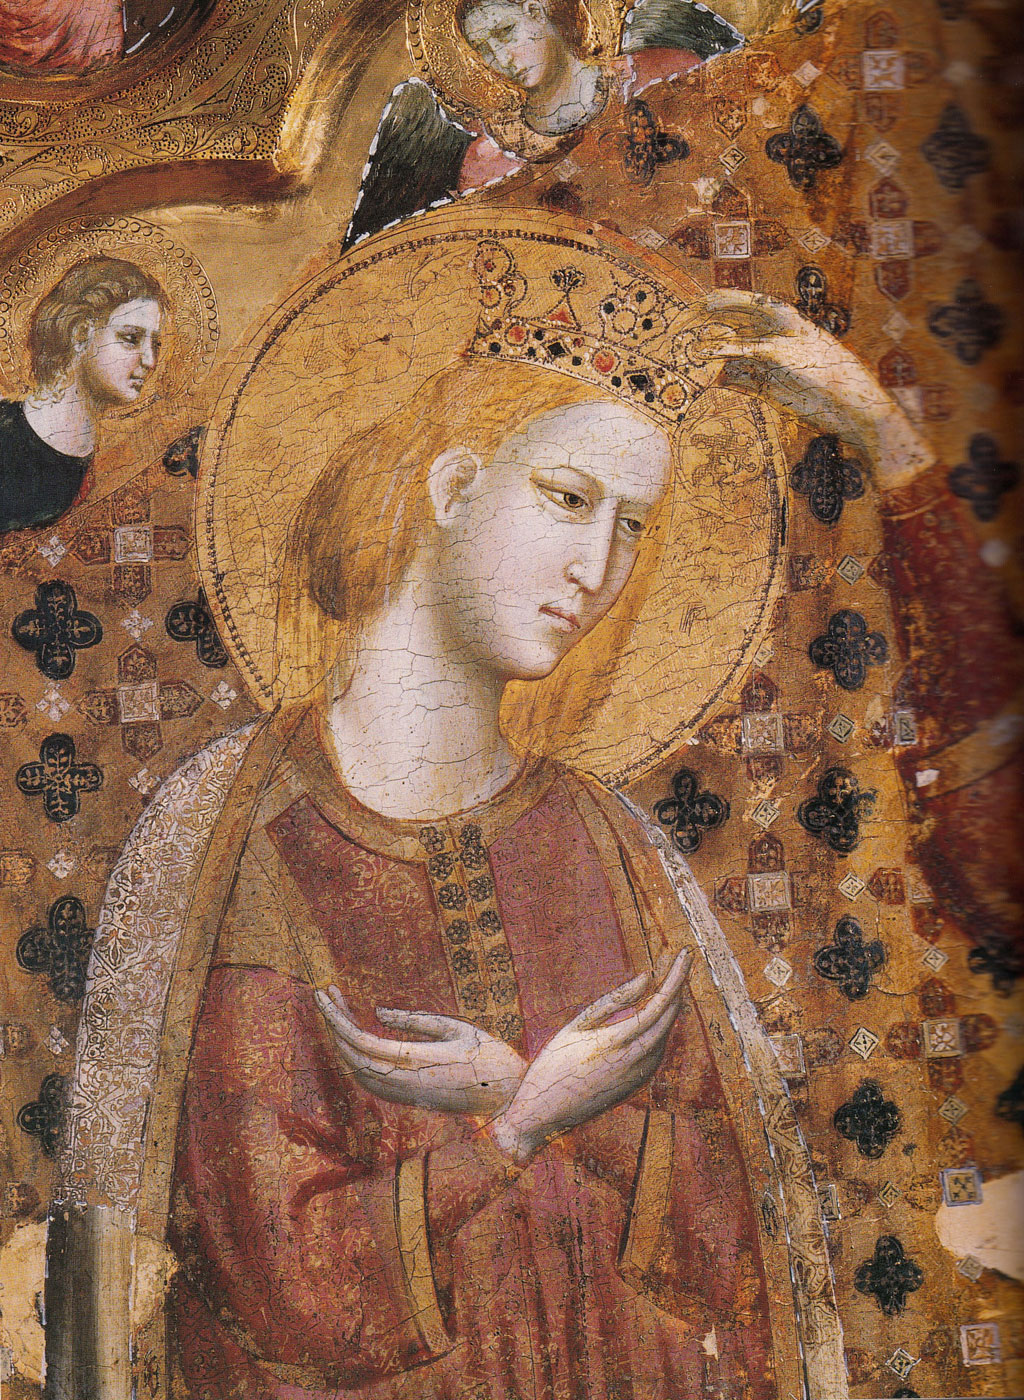 Giuliano di Martino da Rimini, Incoronazione della Vergine, angeli, santi e scene della Passione di Cristo, dettaglio
